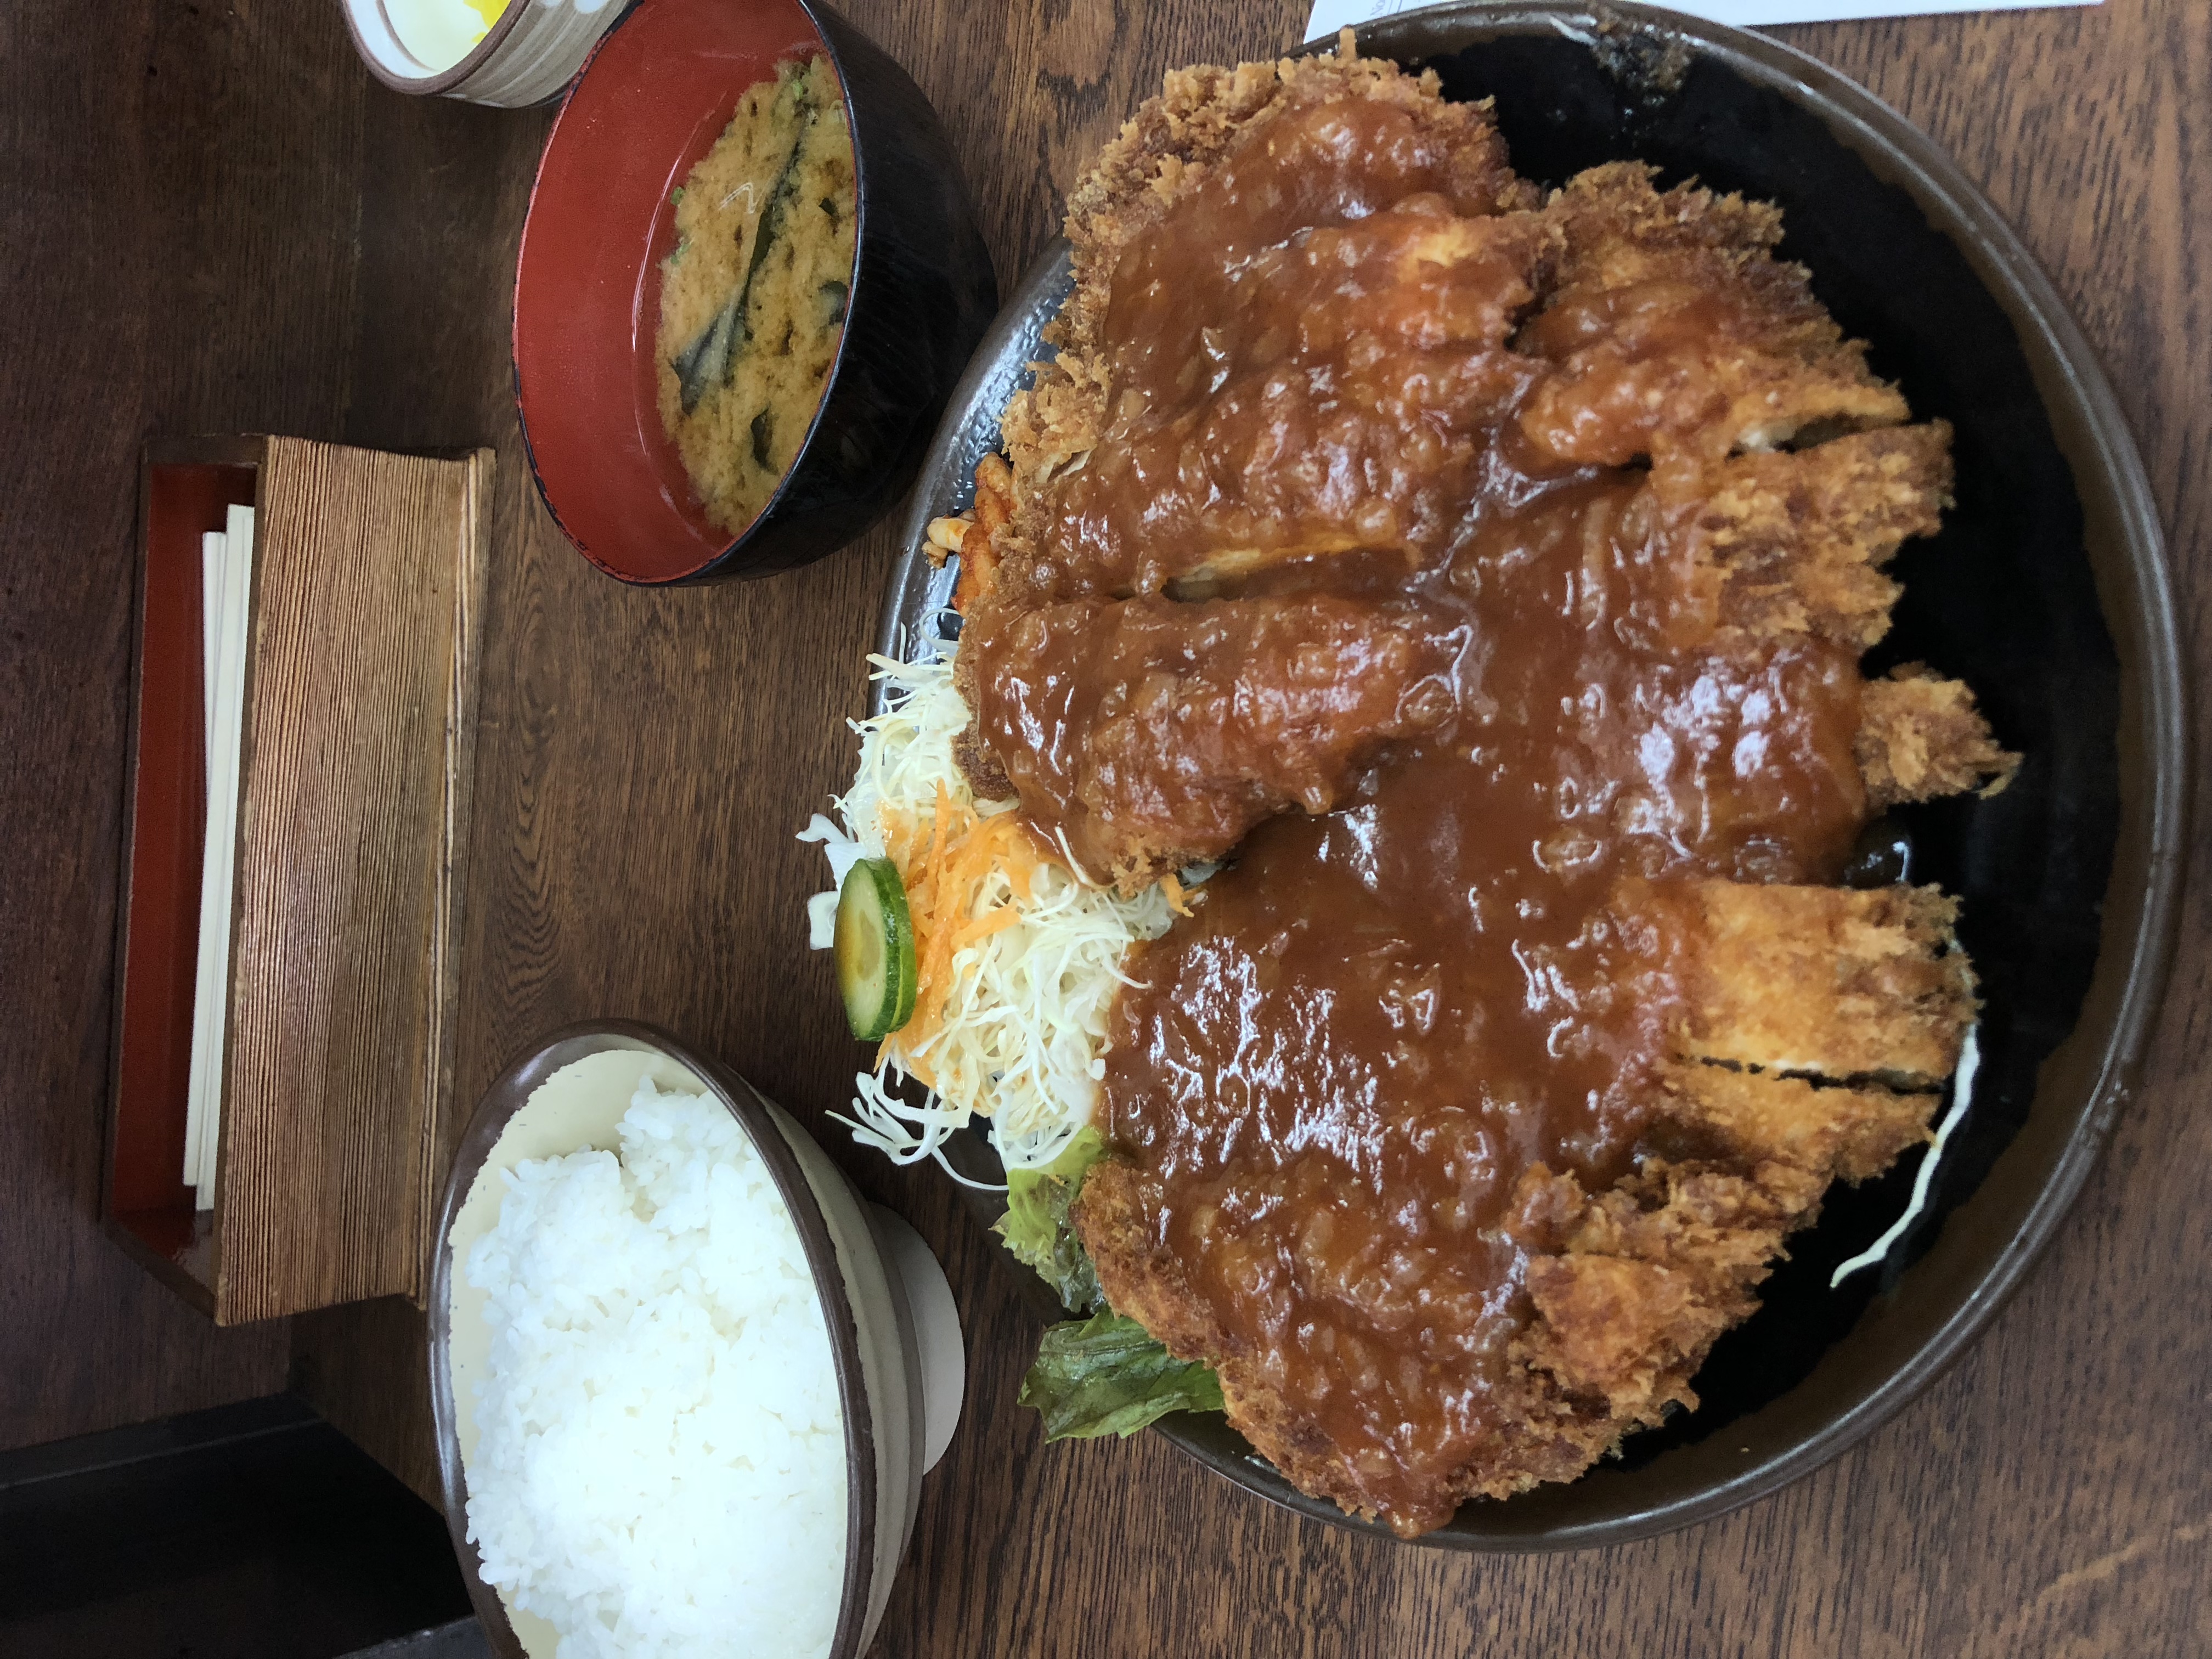 美味しい物 ジャンボチキンカツが超有名 京都の学生さん御用達 安くてボリュームがあって 美味しい 洋食定食屋さん ハイライト食堂 さんに行ってみよう やってみよう ブログ